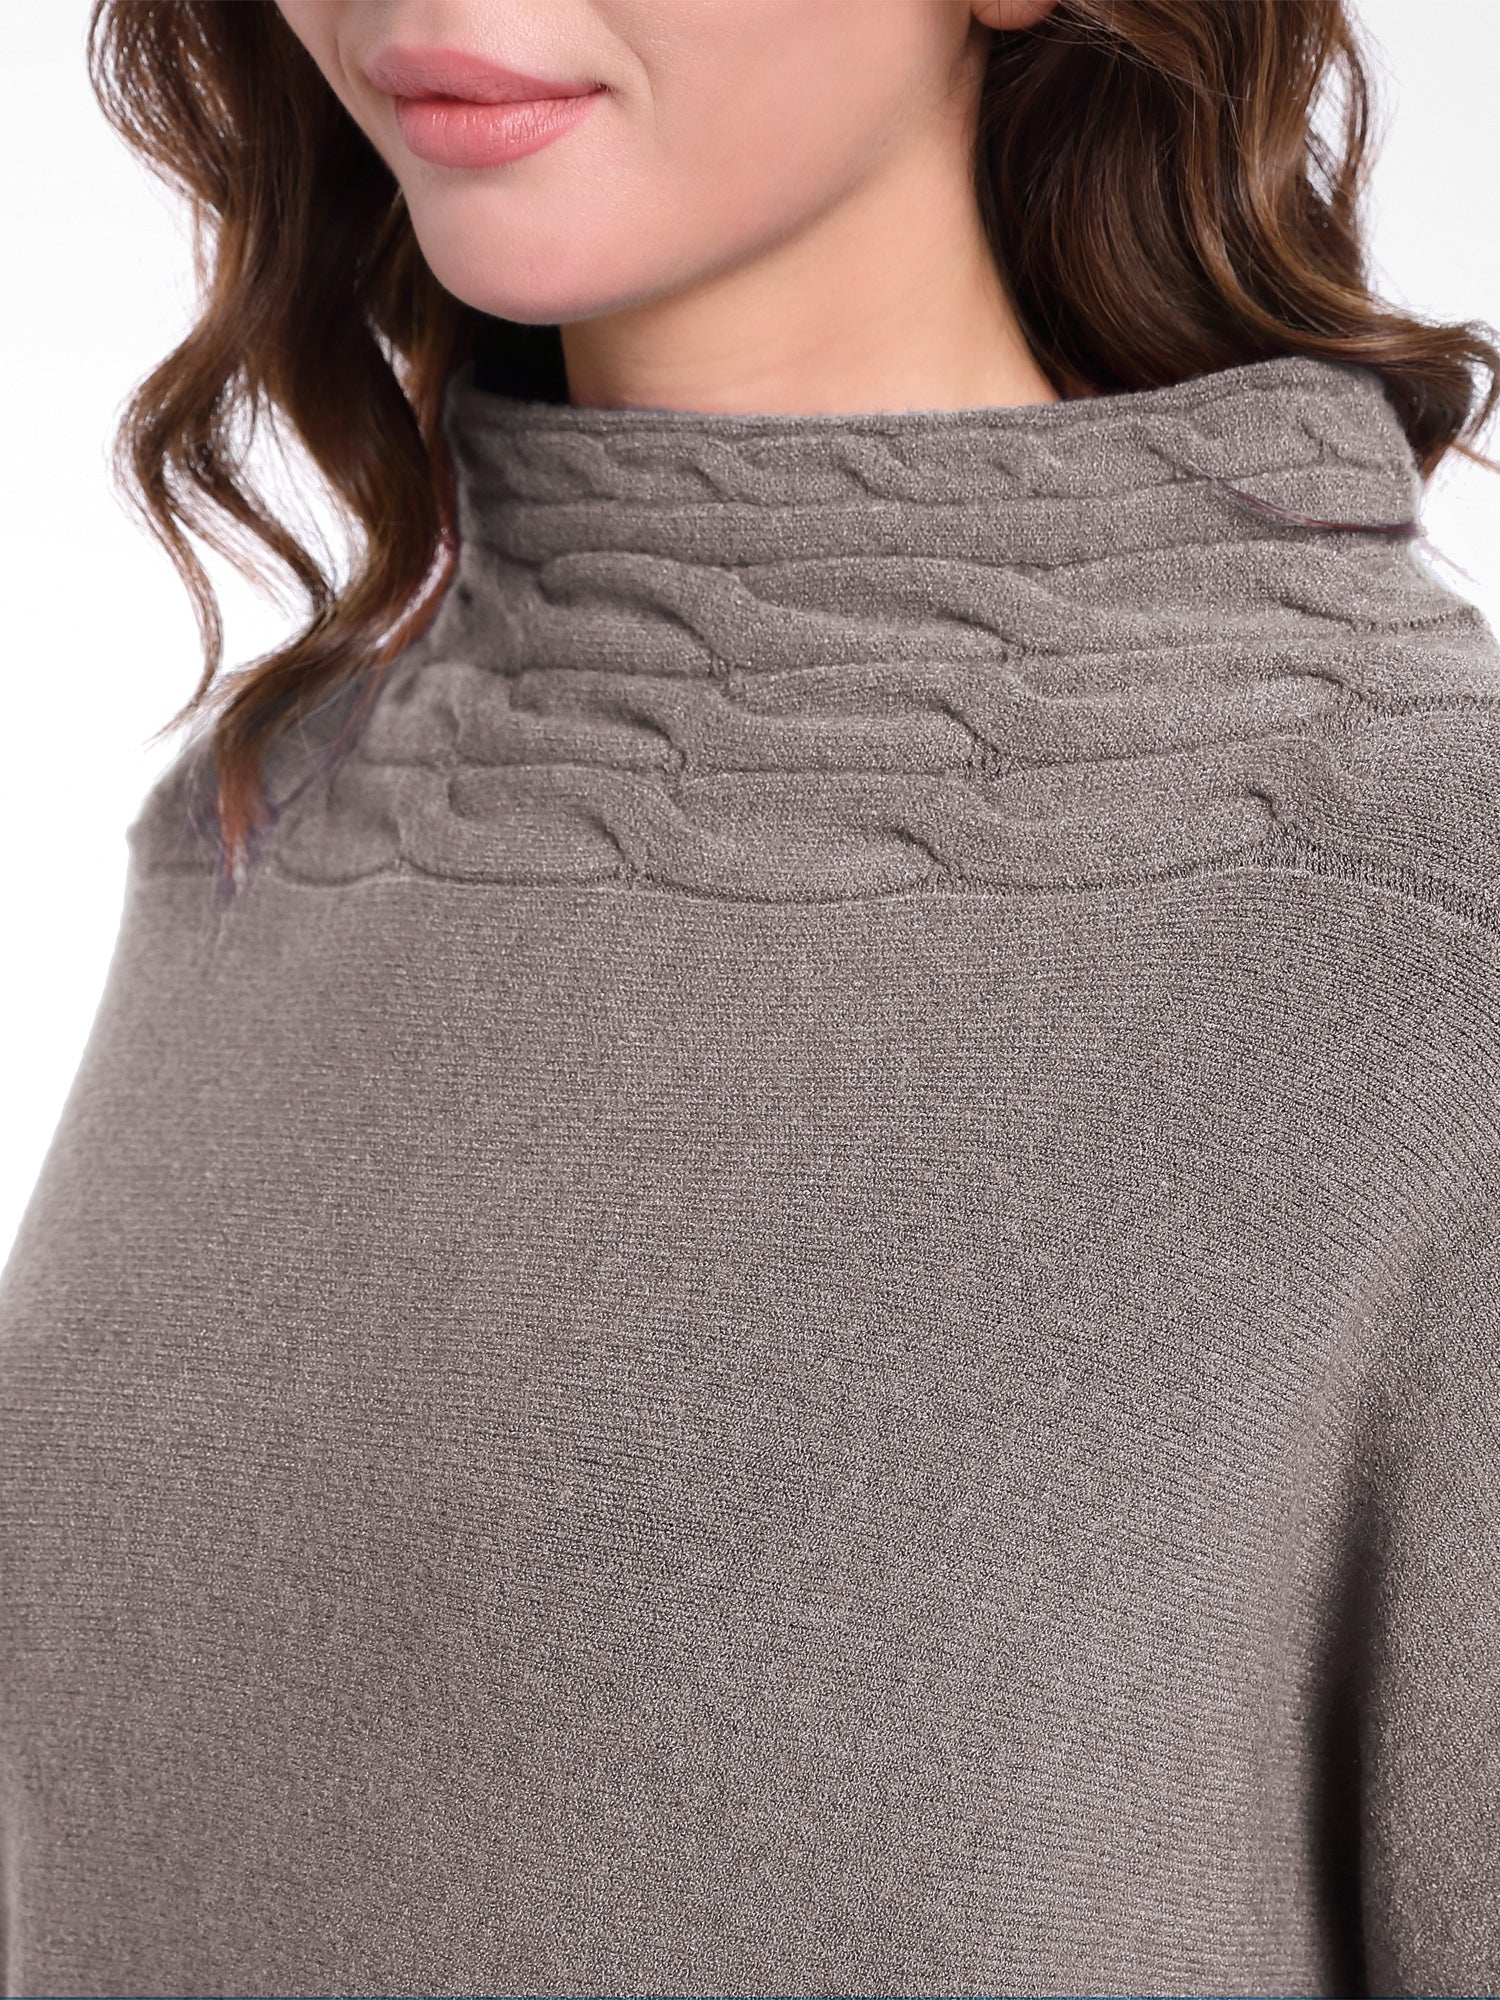 APART kuscheliger Pullover aus weichem Strick mit Kaschmir-Anteil, lange Ärmel, Turtleneck | taupe